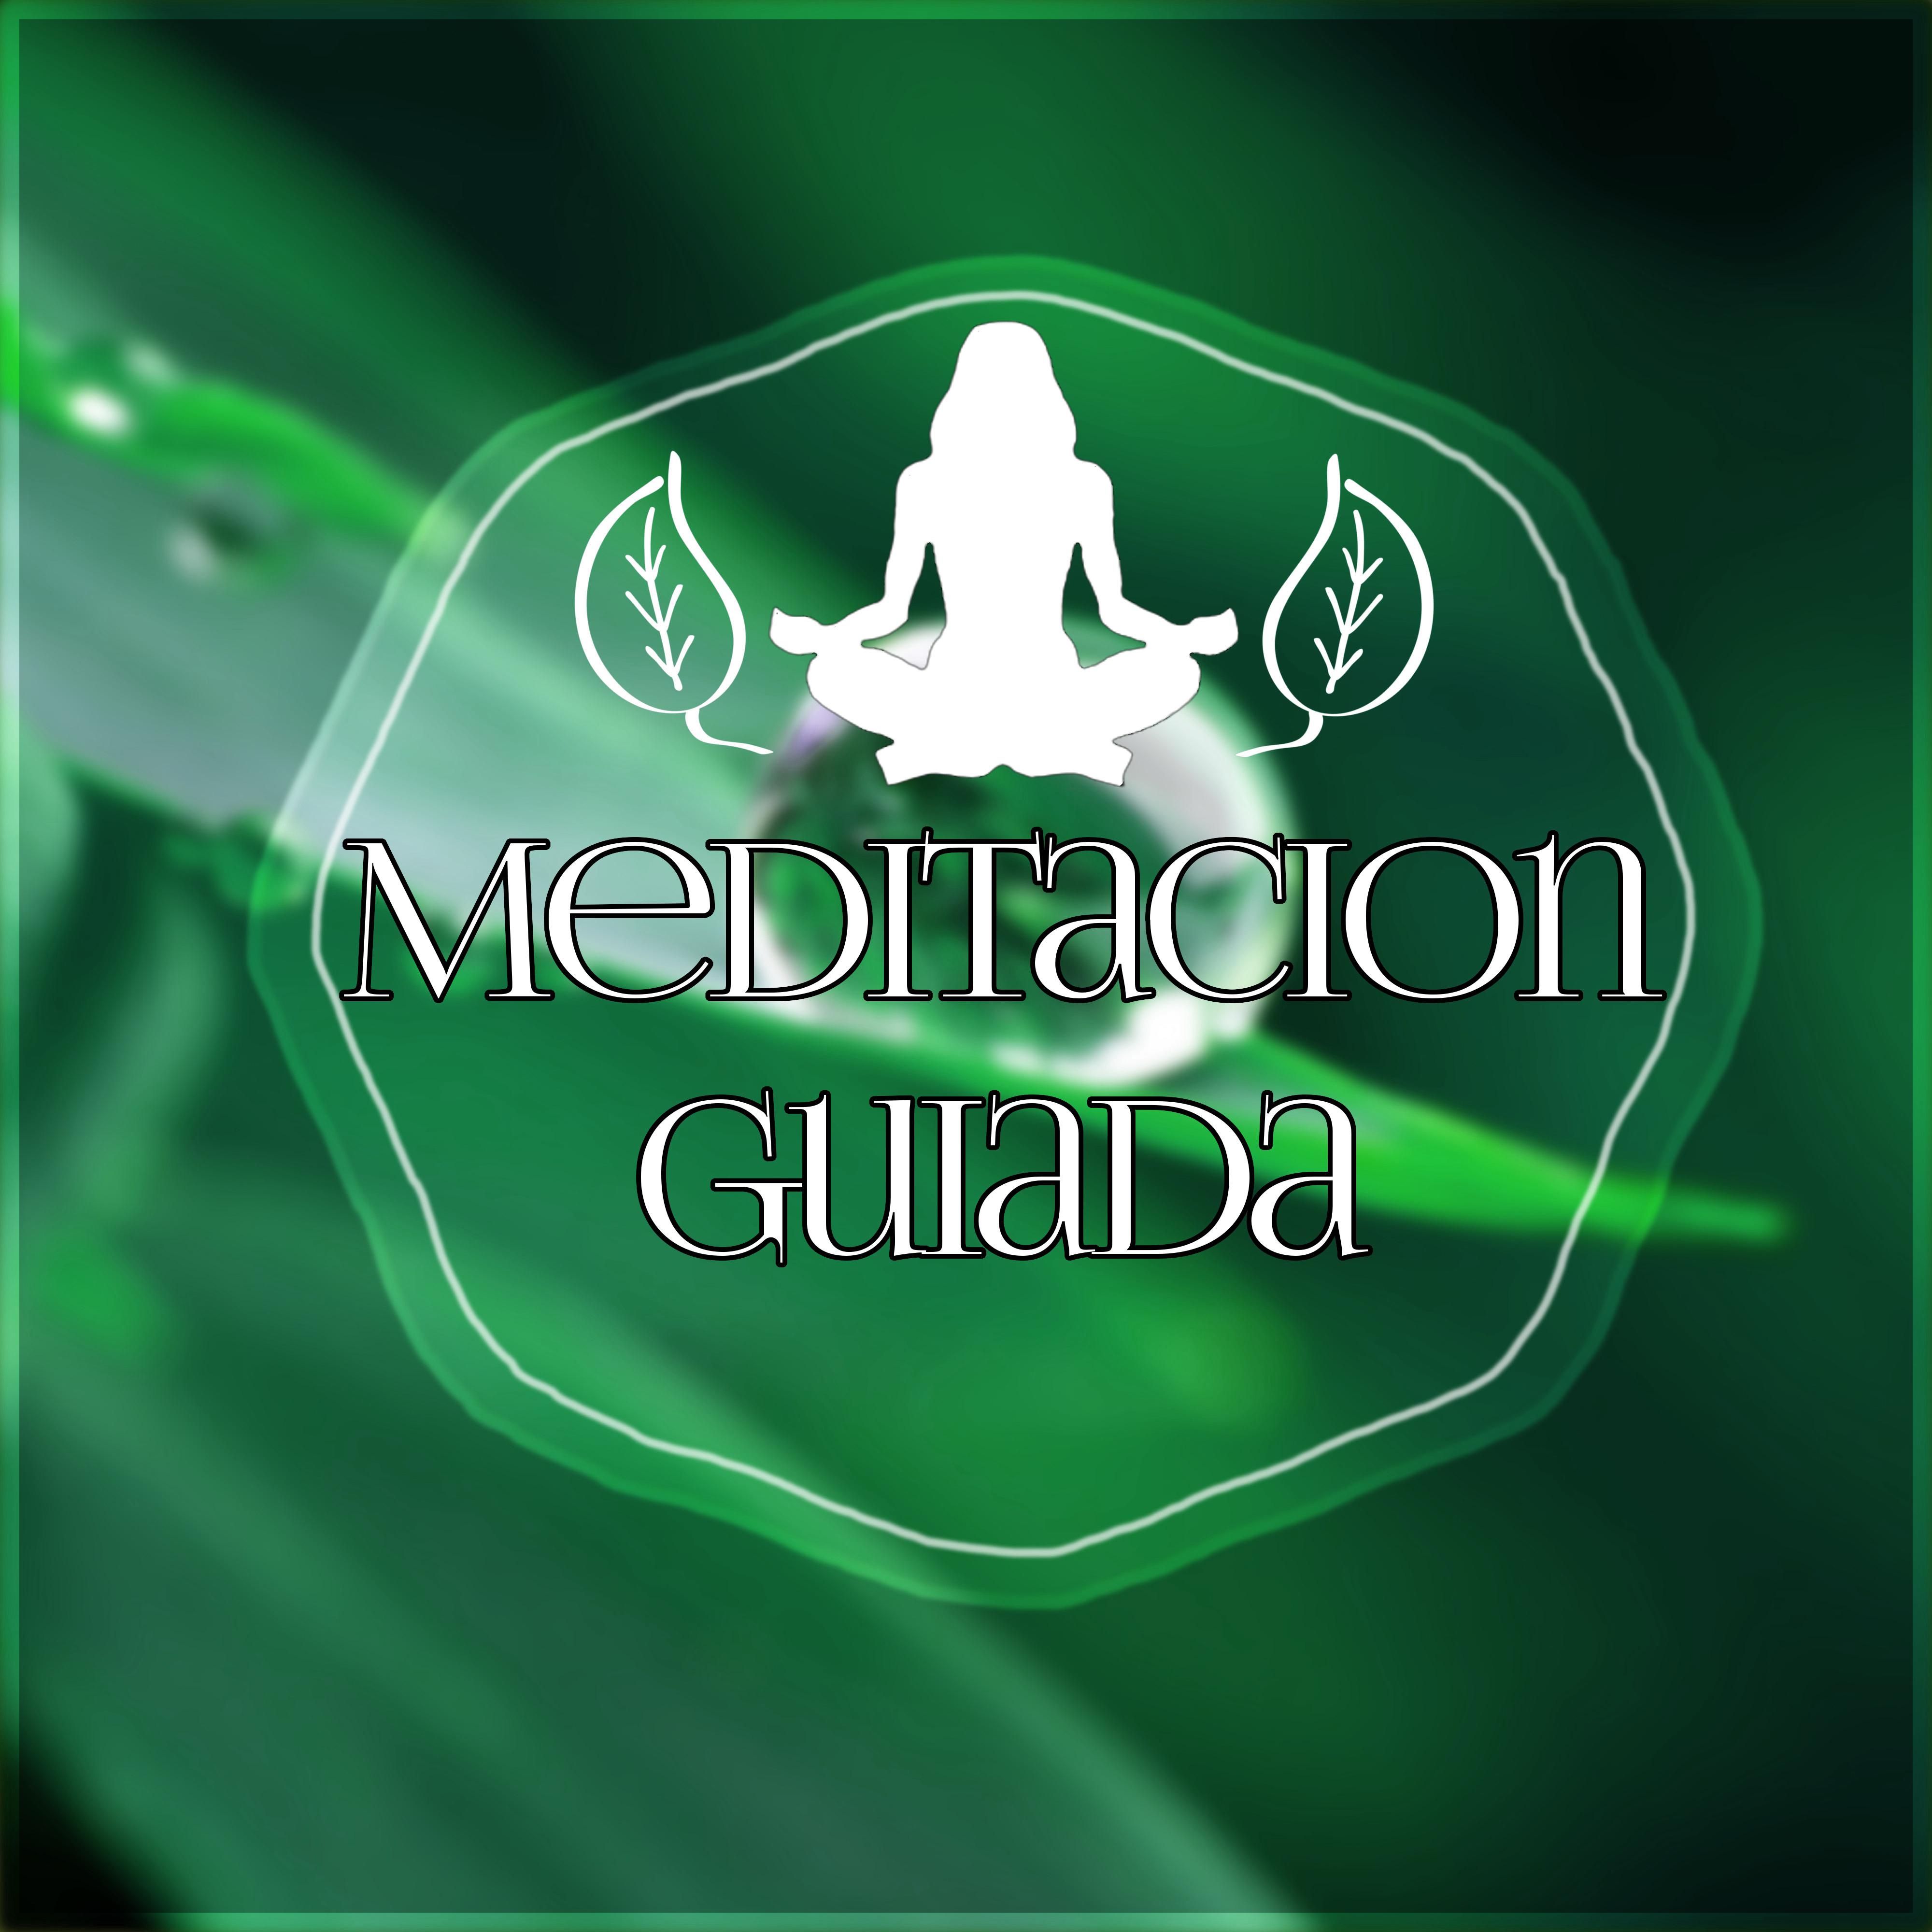 Meditacion Guiada  Canciones para Relajarse y Meditar, Musica New Age de Reiki  para Meditacion, Musica de Fondo